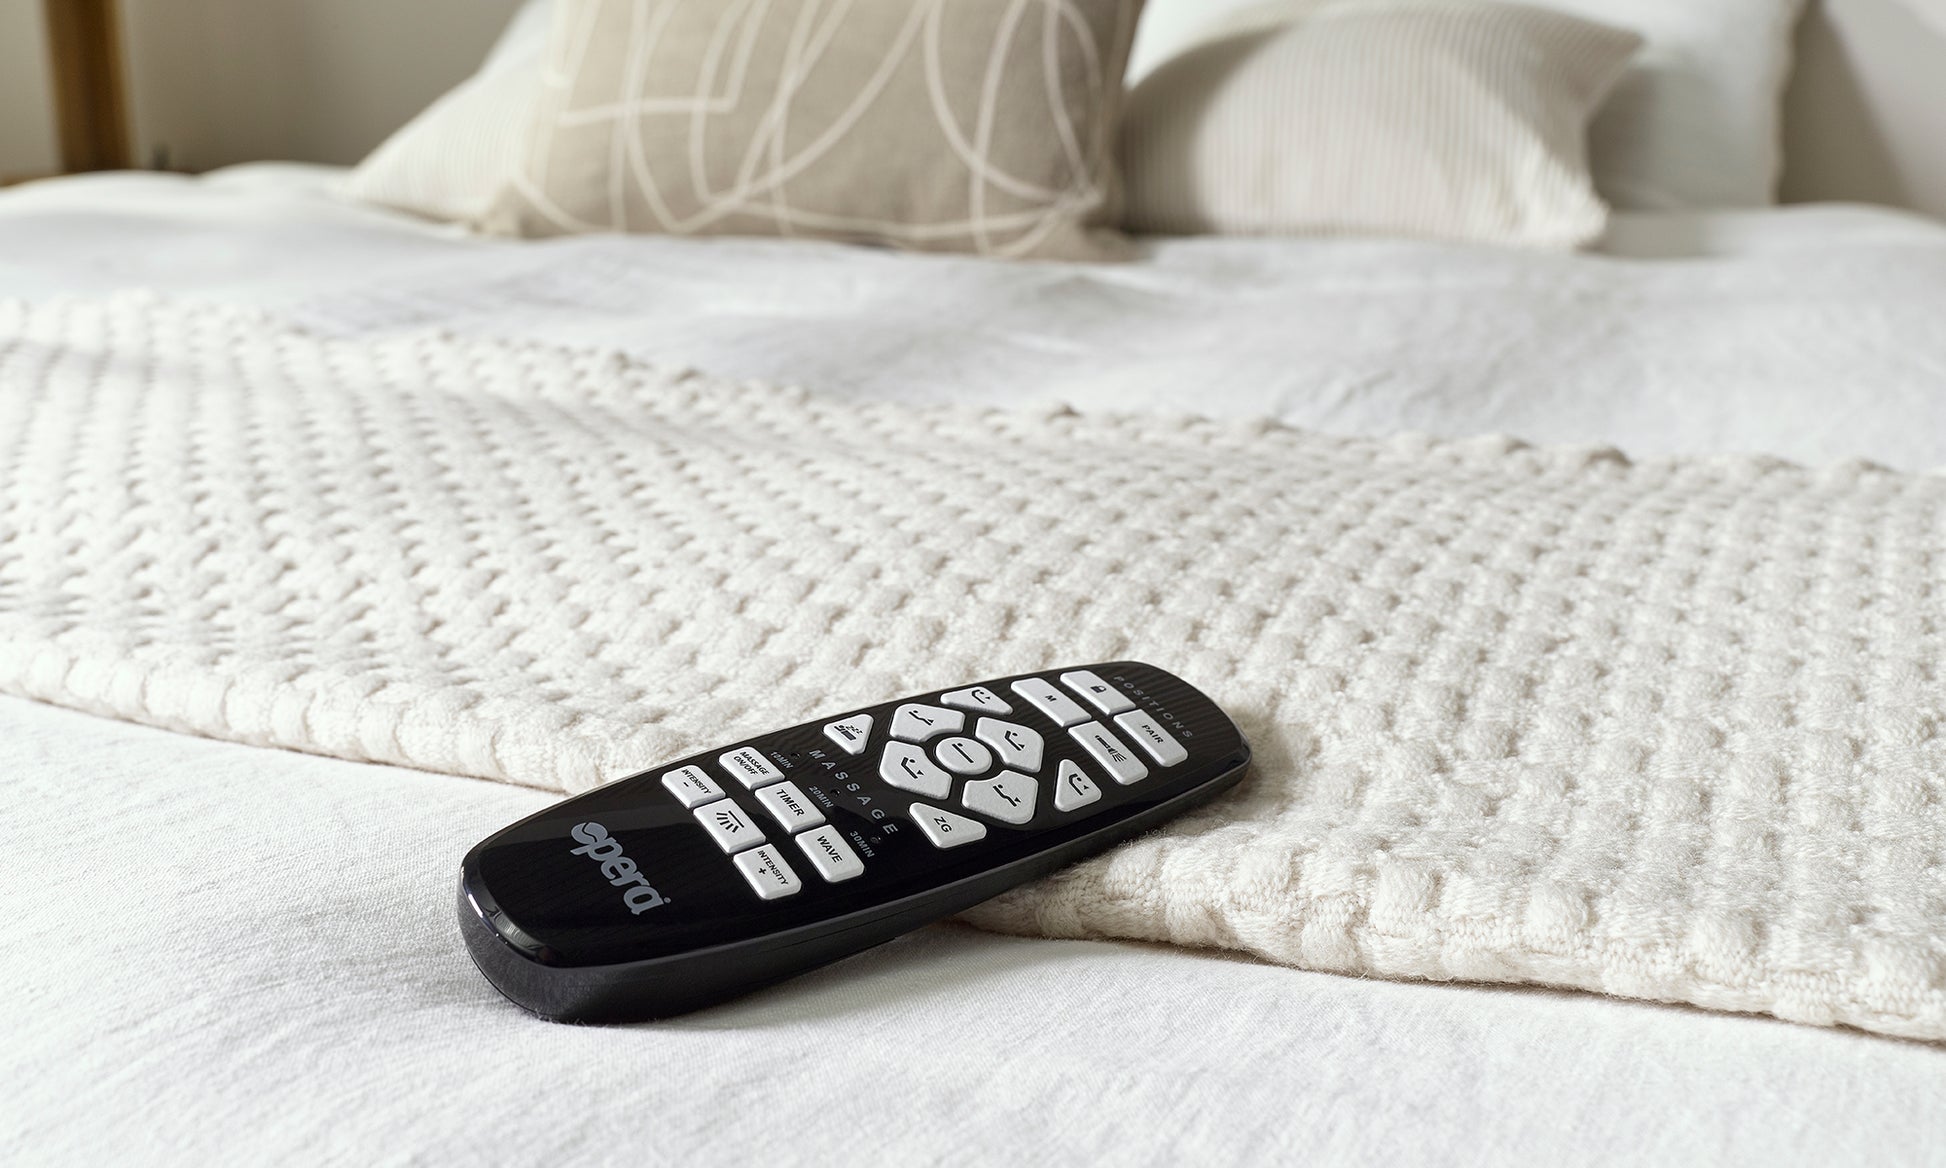 borg adjustable bed handset